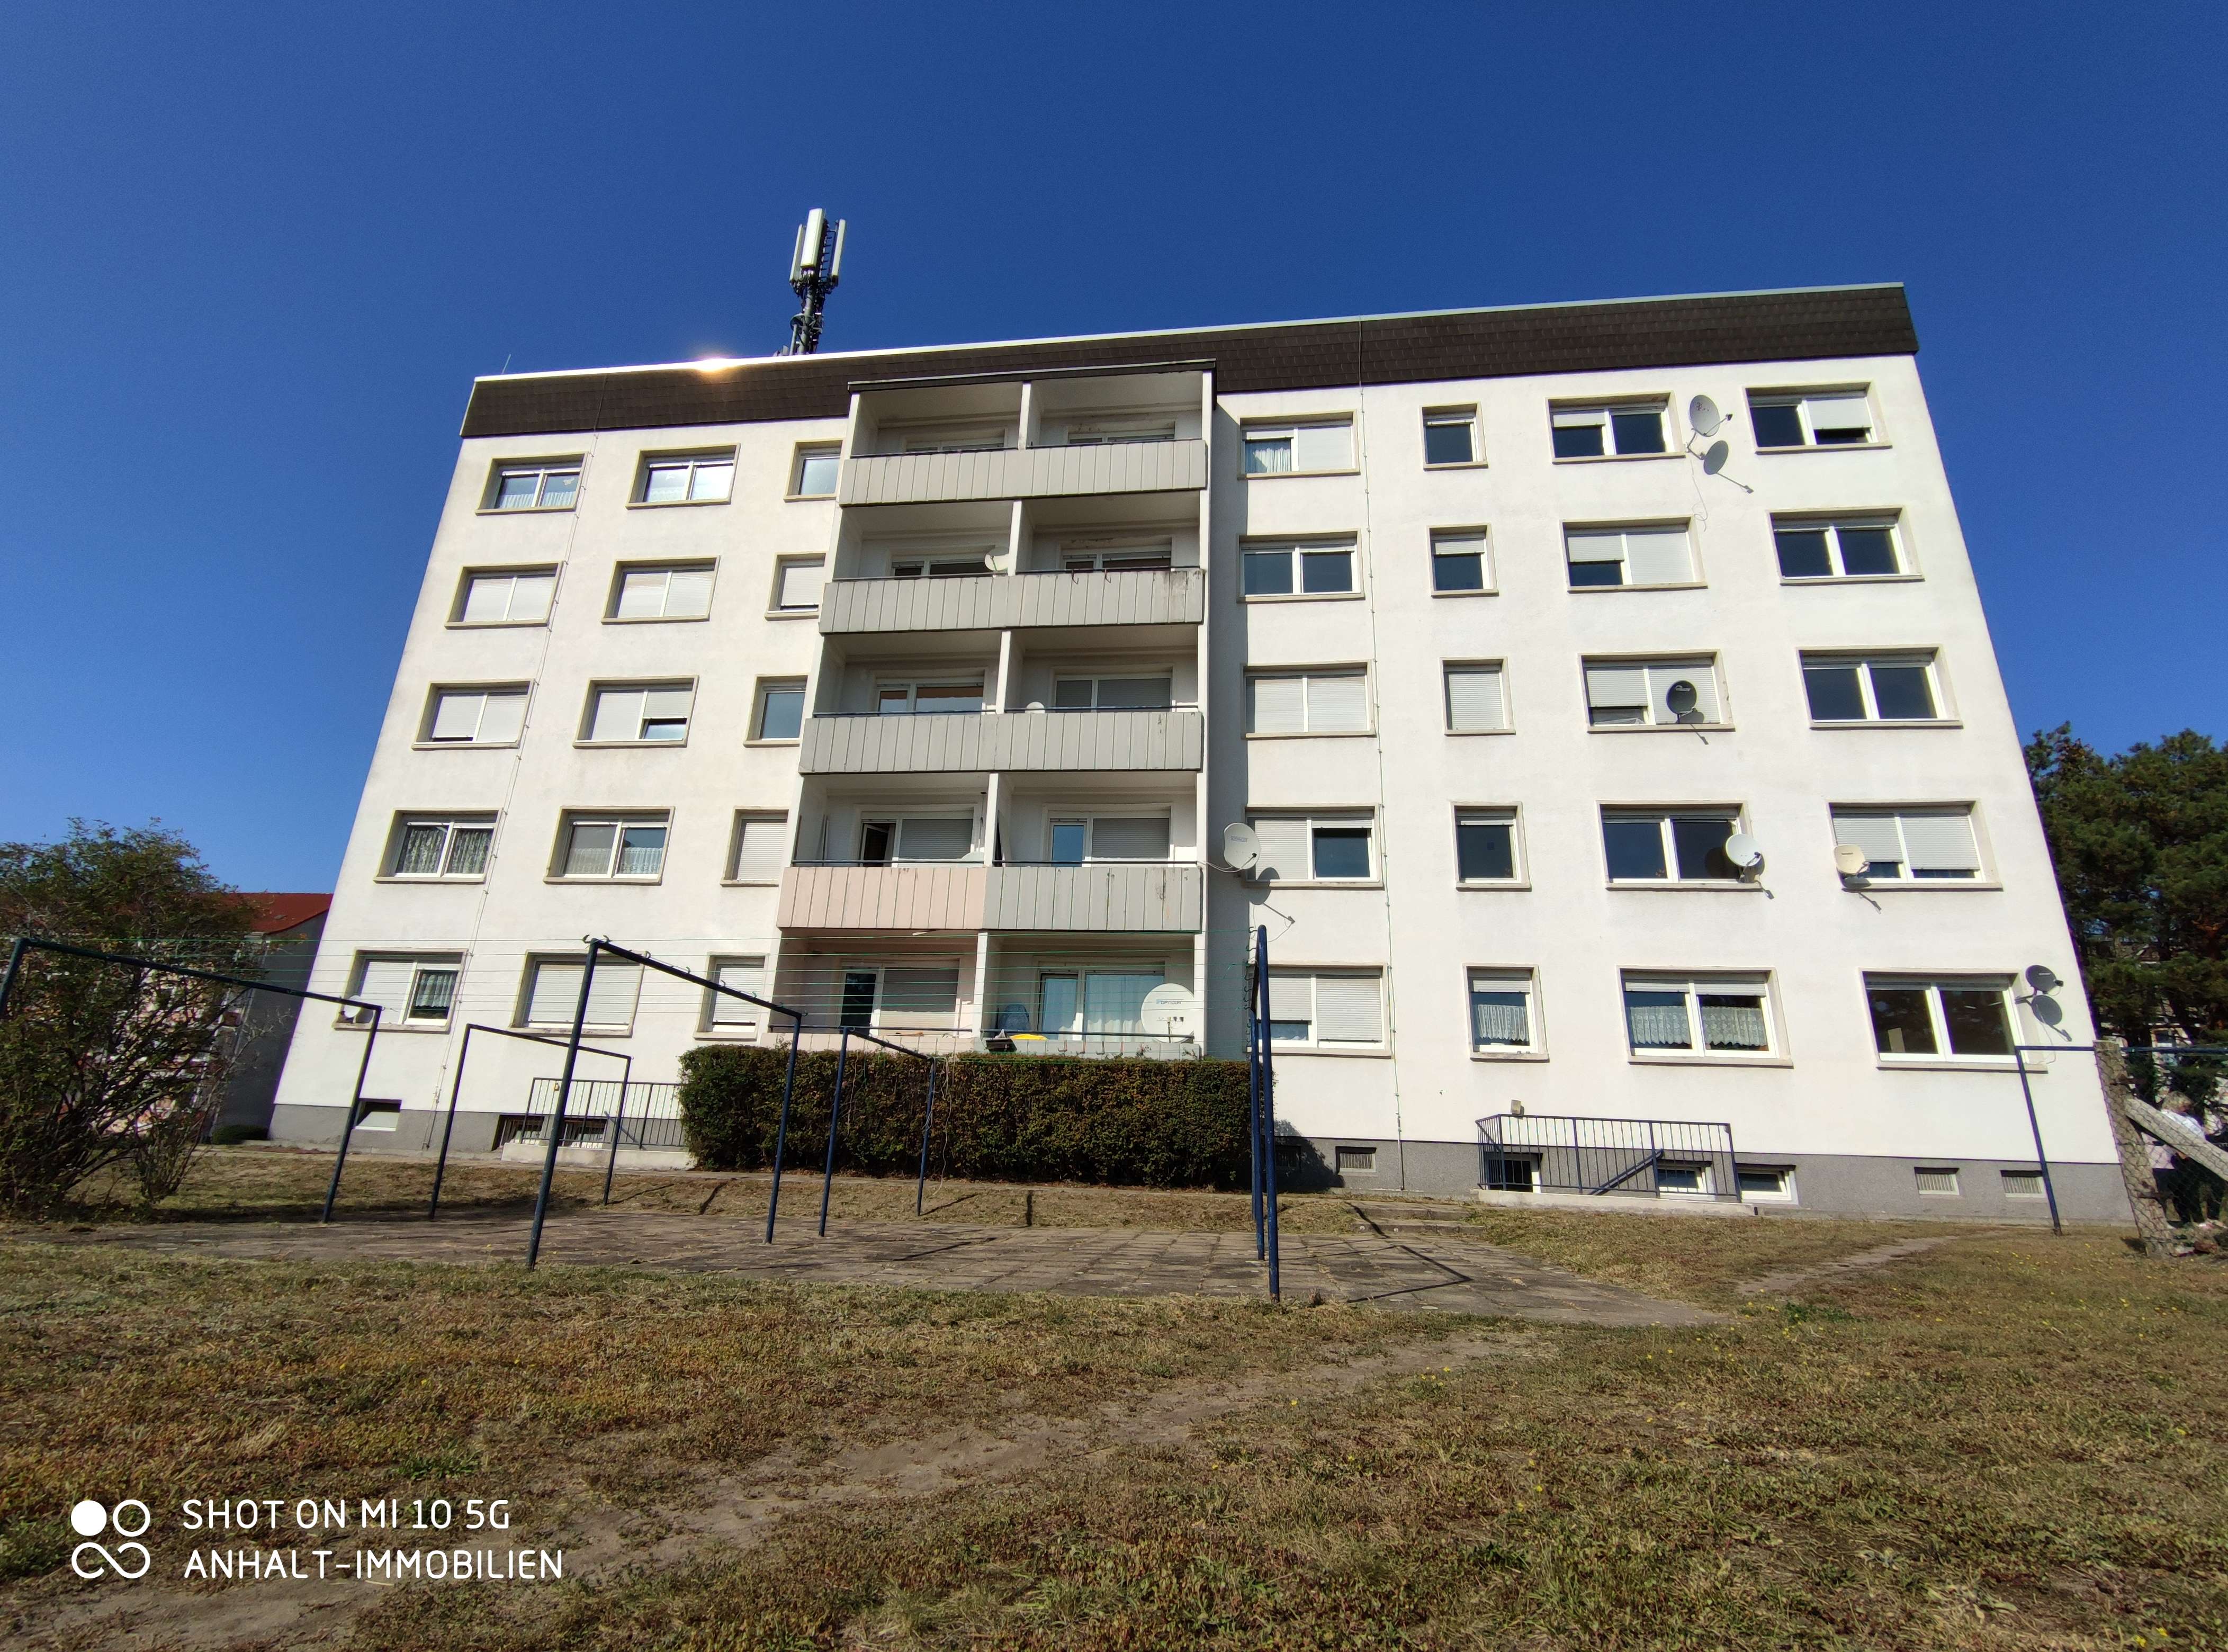 2 Zimmer Wohnung Zu Vermieten Mitschurinstrasse 40 42 Rosslau Dessau Rosslau Mapio Net